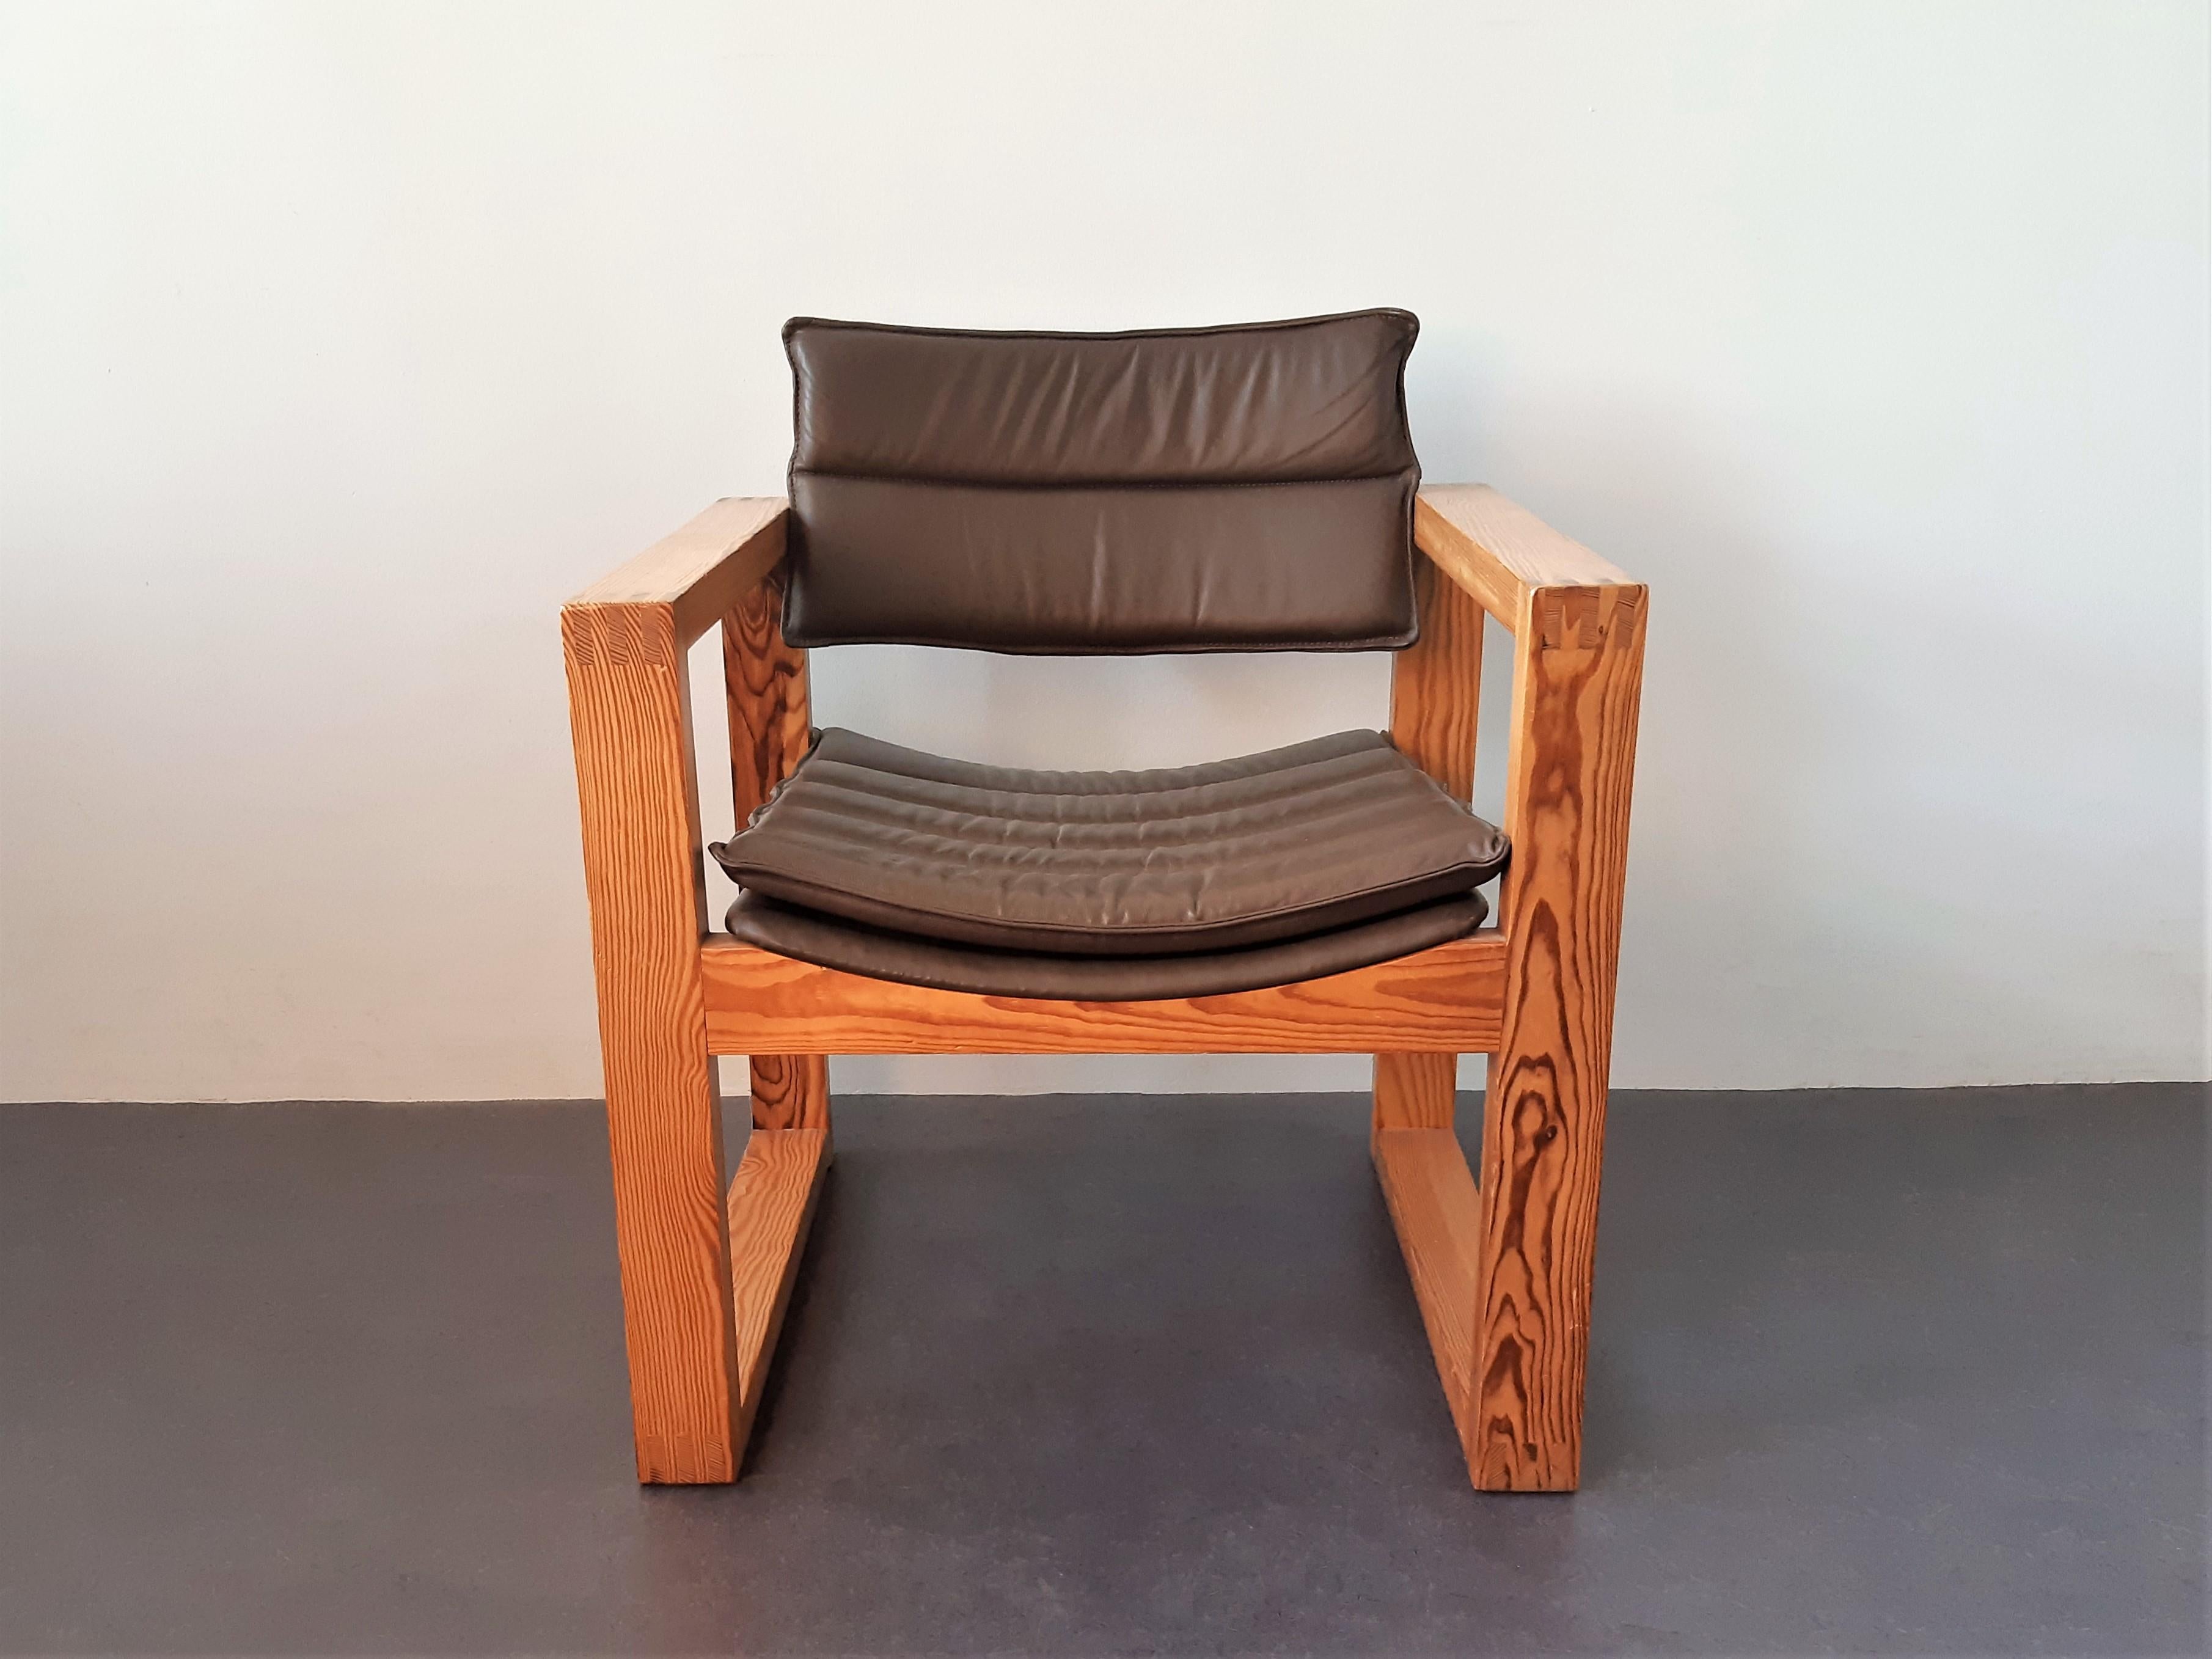 Dieser Stuhl hat einen sehr schönen, minimalistischen und kubischen Entwurf von Ate van Apeldoorn für Houtwerk Hattem. Die Verwendung von Materialien und Techniken ist für seine Entwürfe von großer Bedeutung. Das Gestell ist aus massivem Kiefernholz